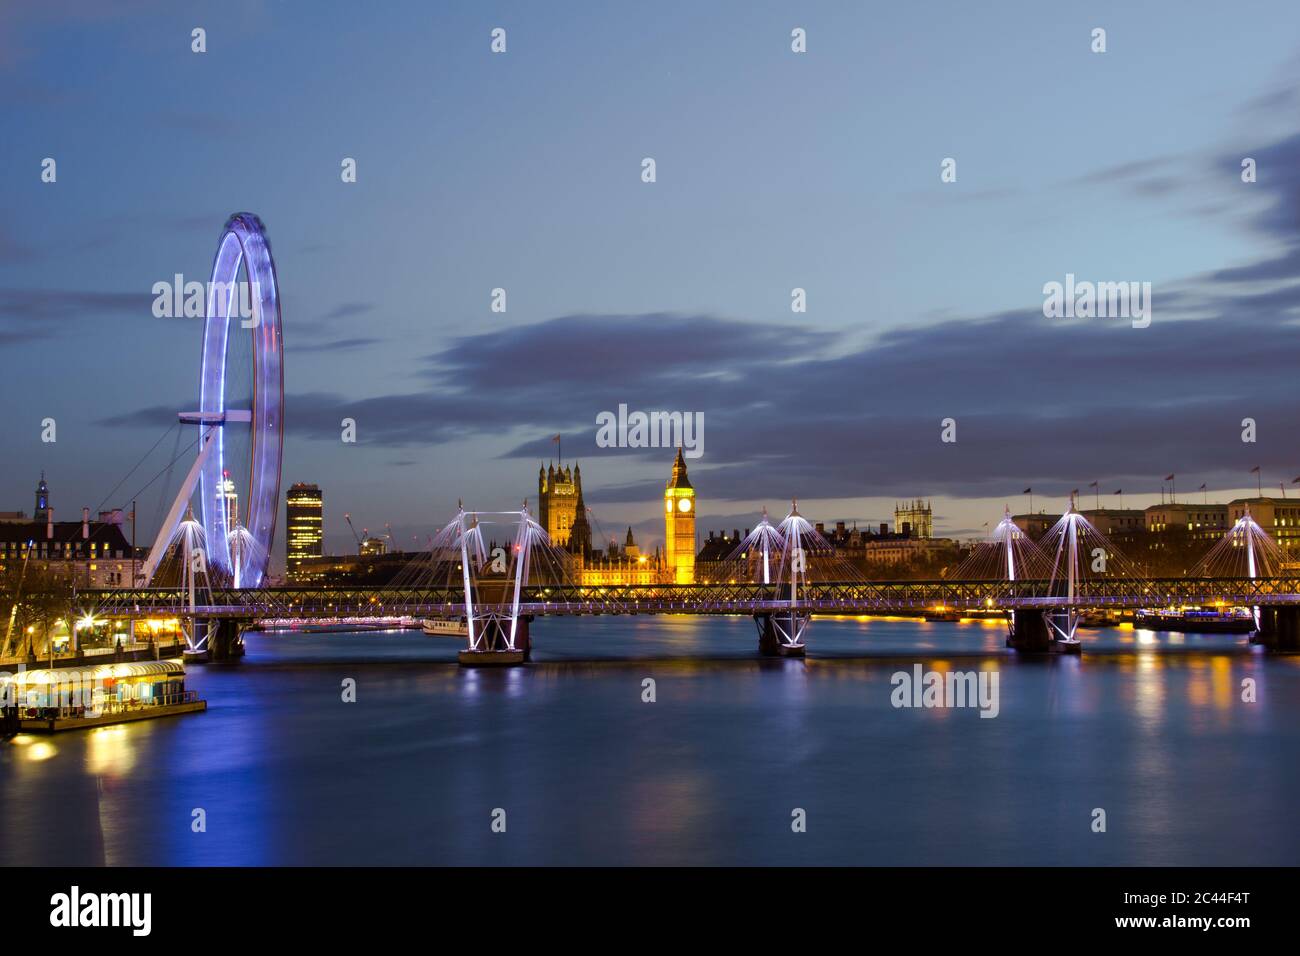 LONDRES, Royaume-Uni - 23 MARS 2014 : paysage urbain de Londres de nuit avec le London Eye, le Parlement et le pont Hungerford Banque D'Images